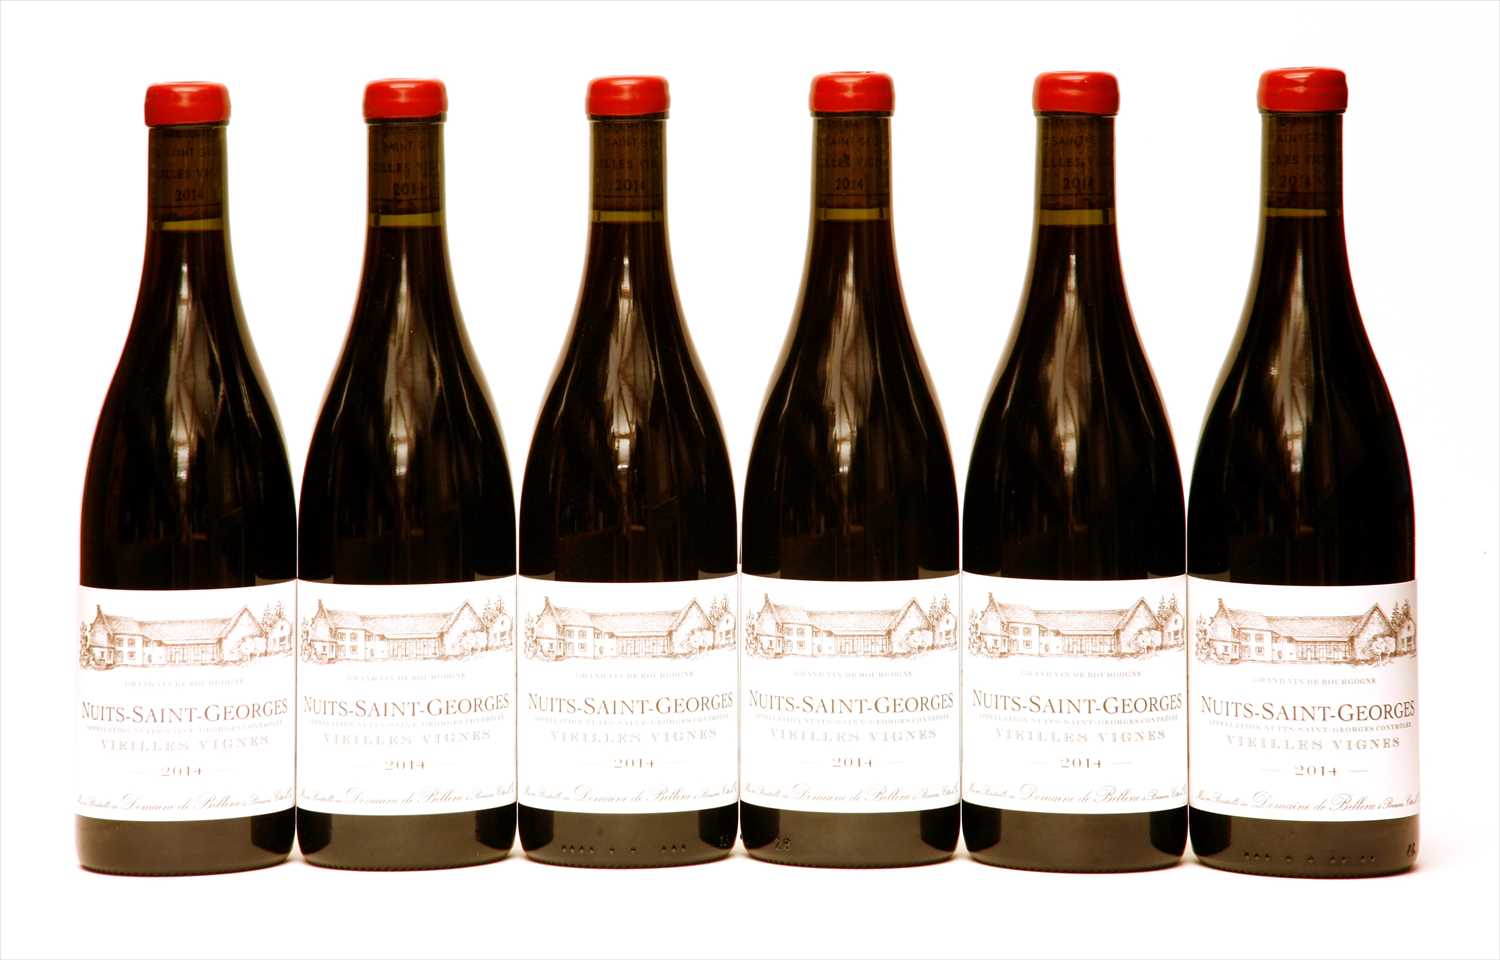 Lot 223 - Domaine de Bellene, Nuits St. Georges, Vieilles Vignes, 2014, six bottles